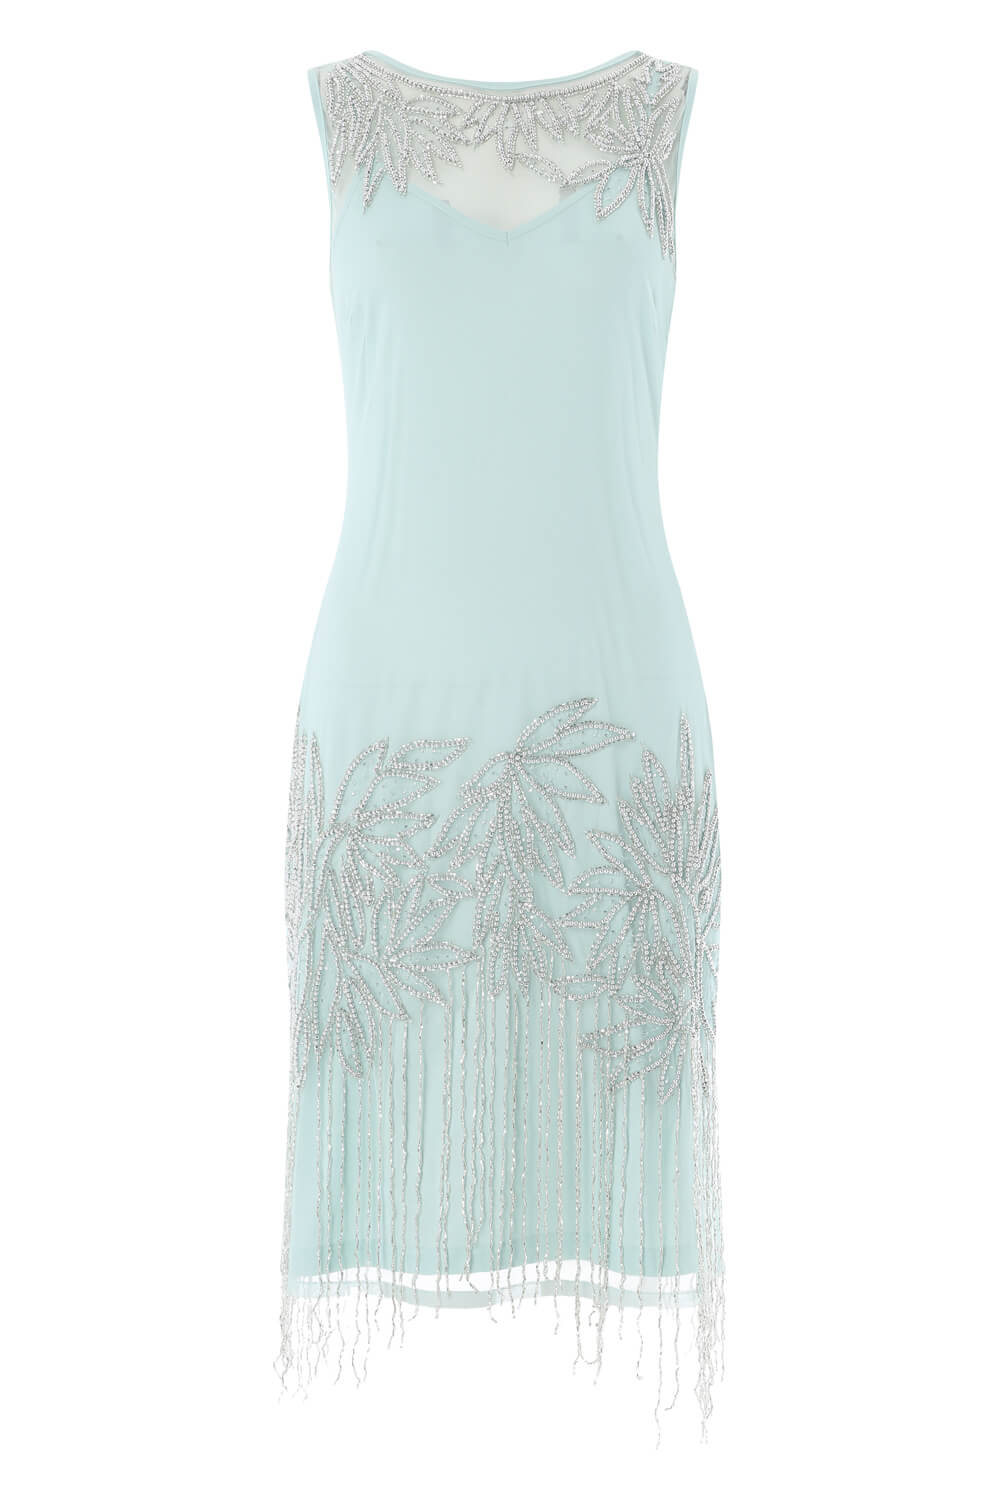 Mint  Embellished Flapper Dress, Image 5 of 5